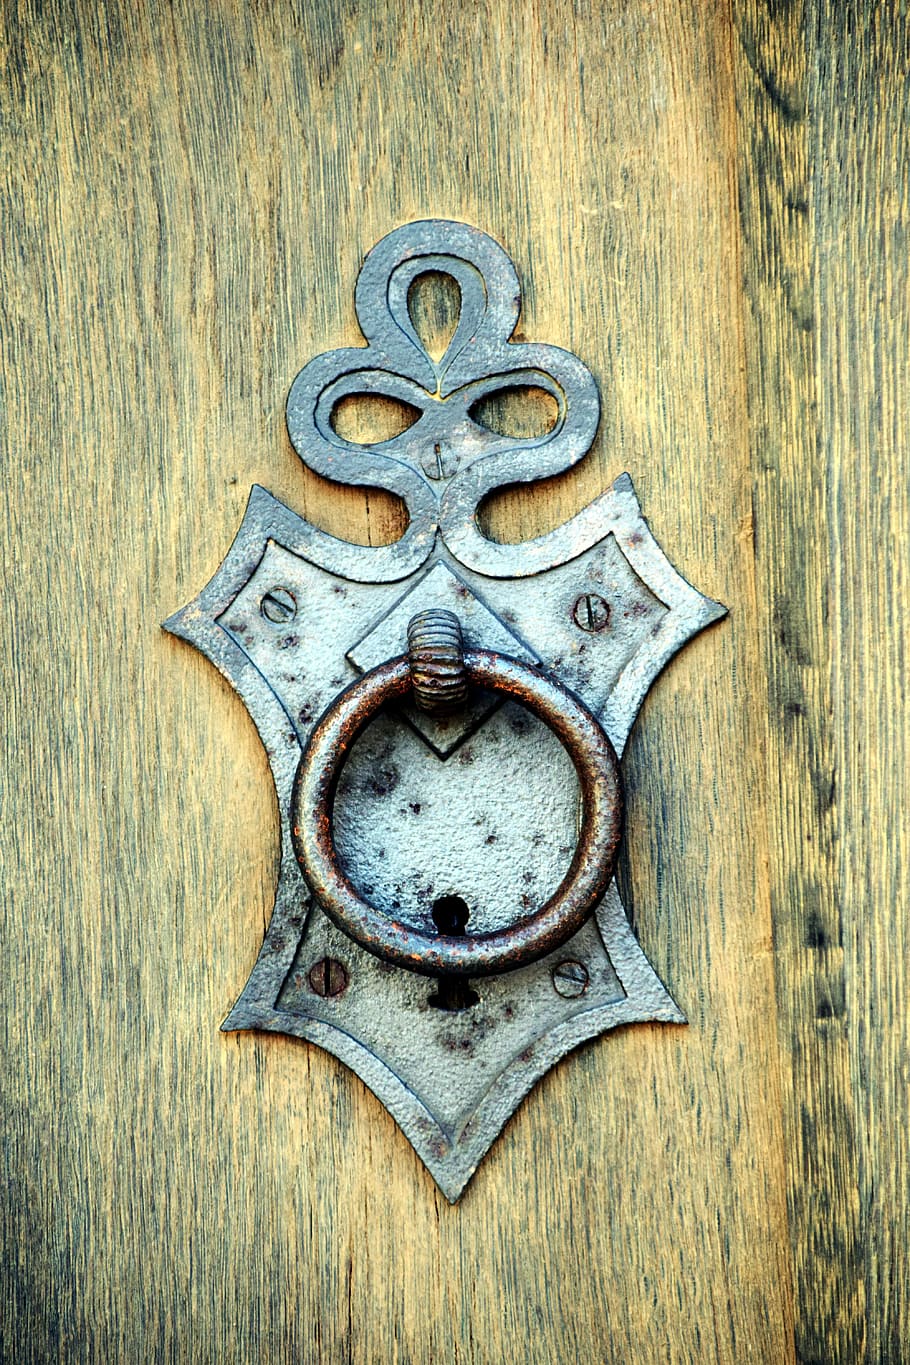 silver door knocker on brown wooden door, thumper, handle, old